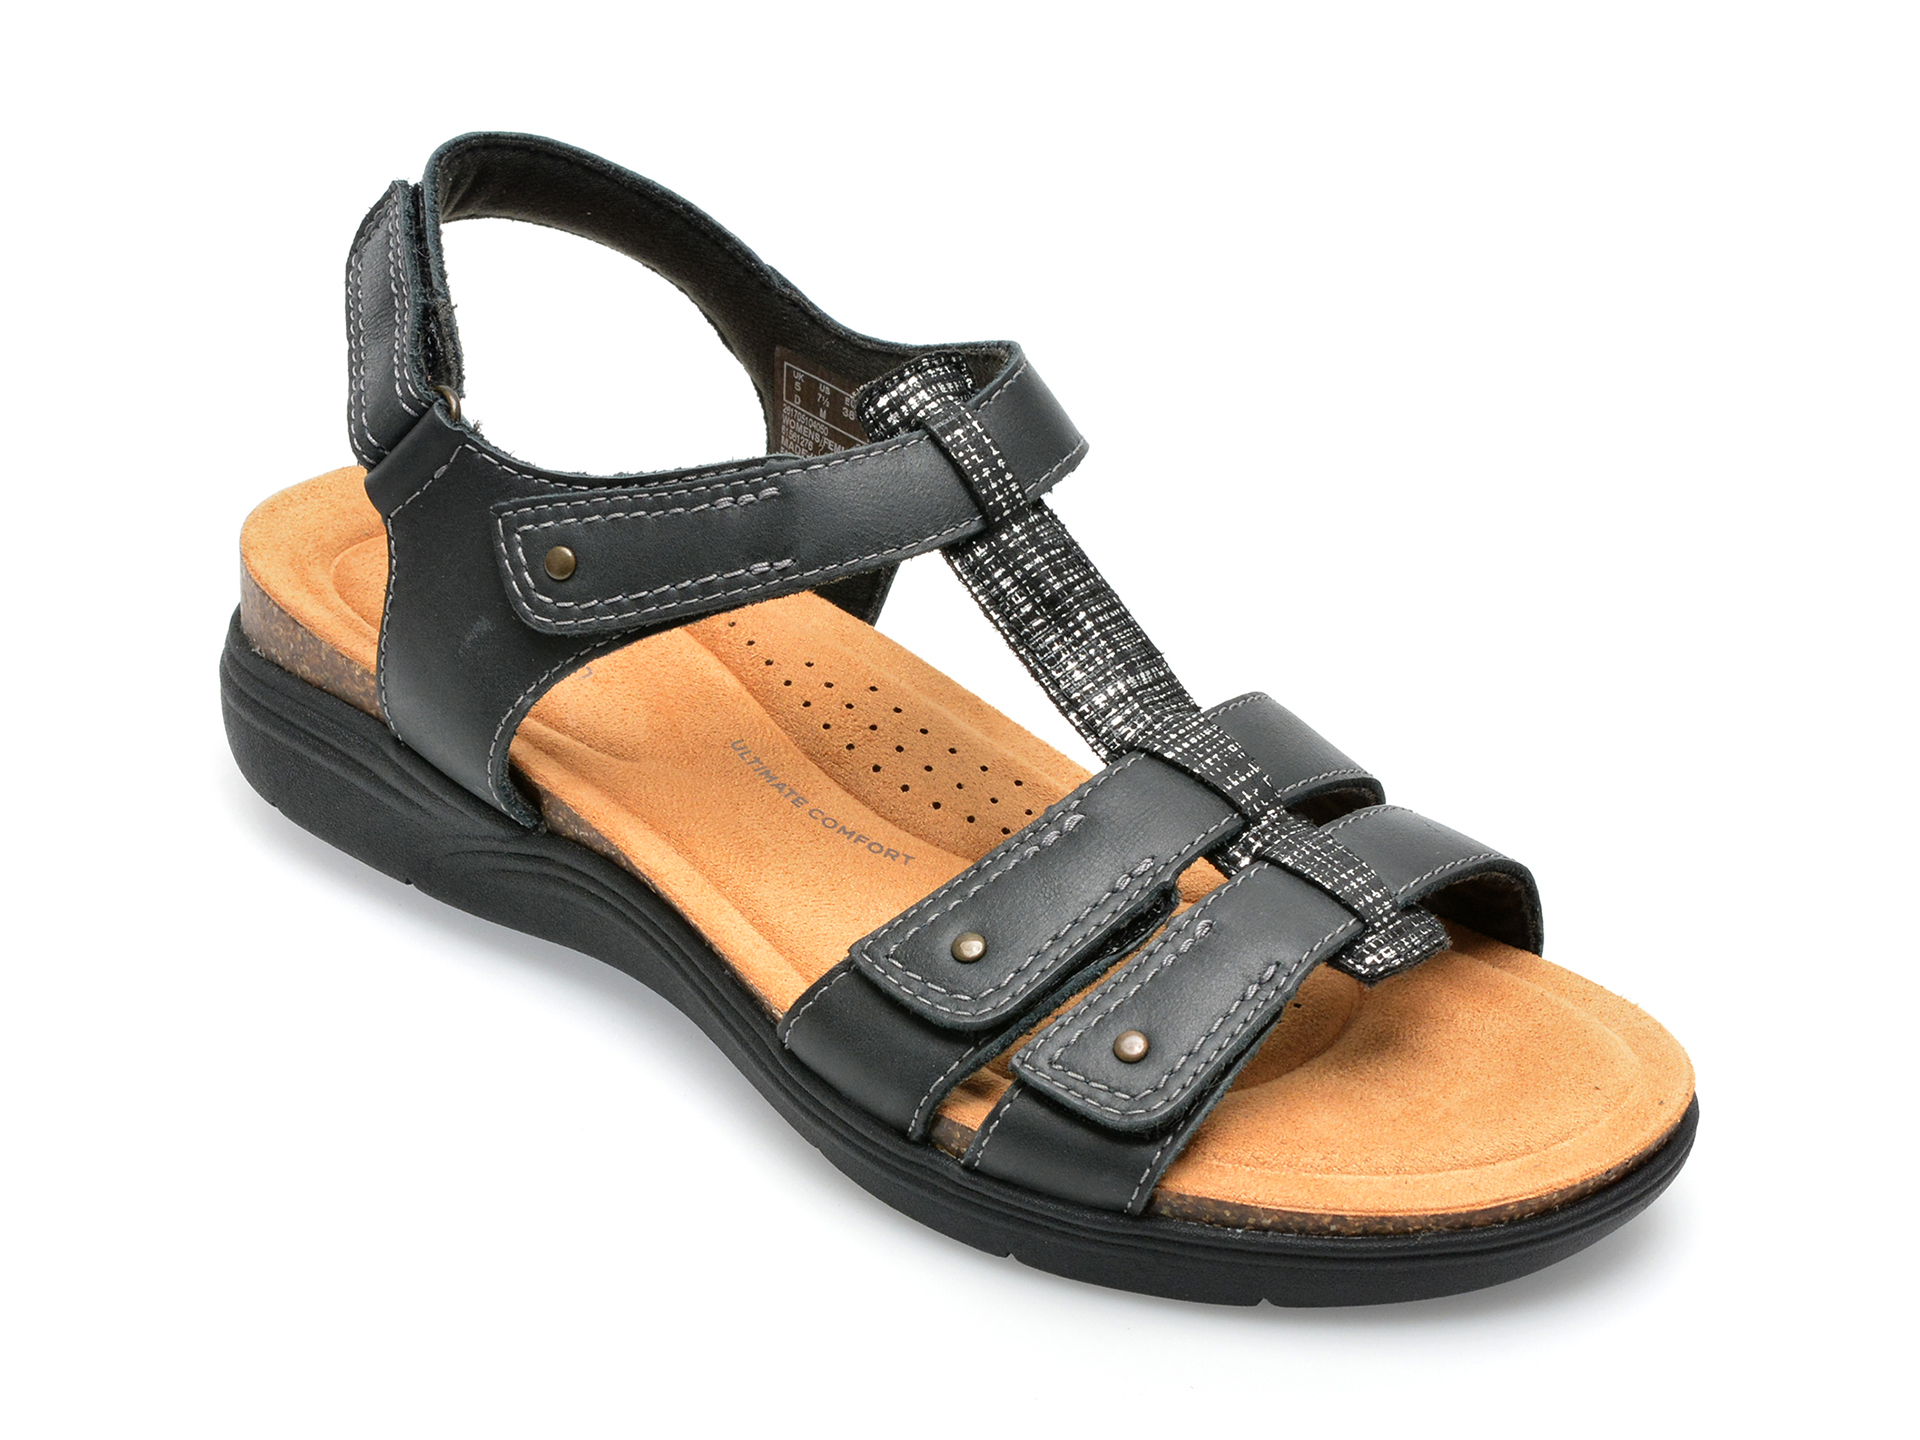 Sandale CLARKS negre, APRIL COVE 0912, din piele naturala femei 2023-03-21